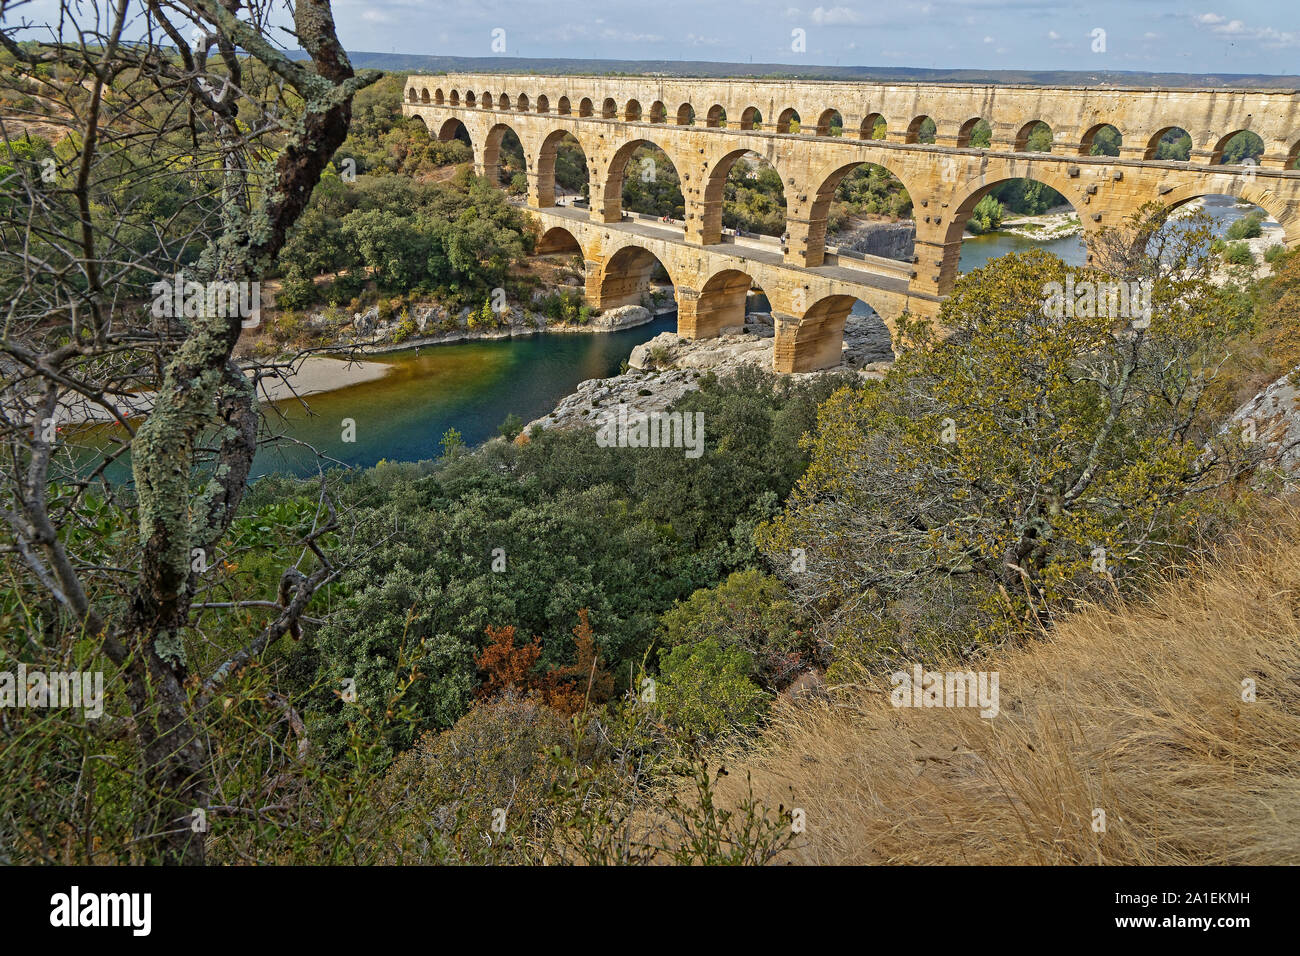 Villeneuve-lès-Avignon, France, 20 septembre 2019 : Le Pont du Gard, le plus haut pont-aqueduc romain, et l'un des plus préservés, a été construit au 1er siècle Banque D'Images